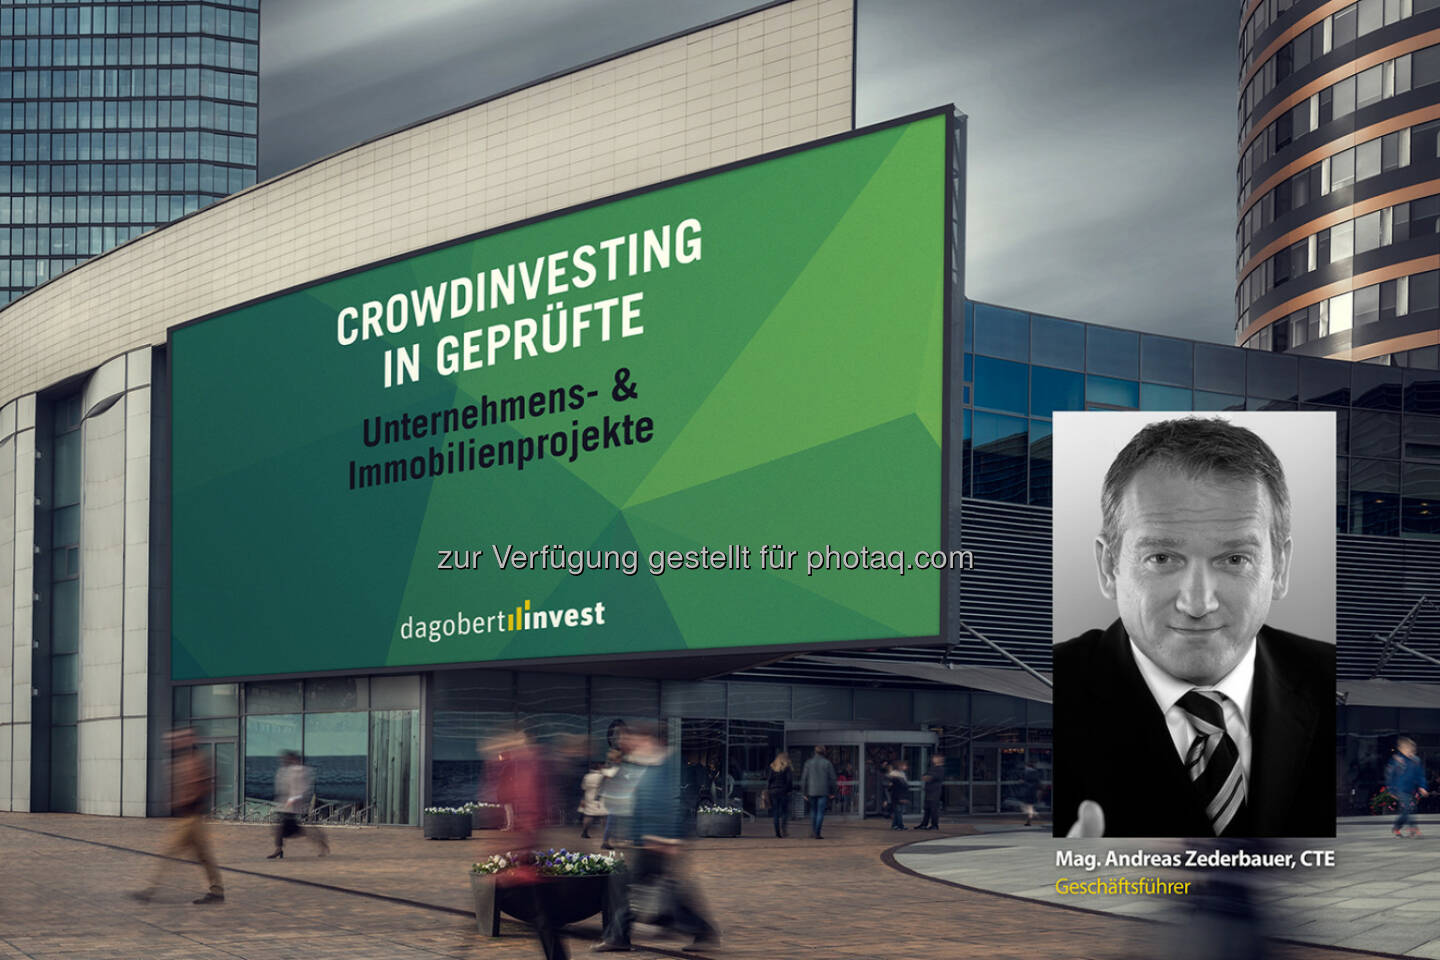 Andreas Zederbauer (Gründer von dagobertinvest) : Mit dagobertinvest in betriebswirtschaftlich geprüfte Projekte investieren : Neue Crowdfunding-Plattform von Finanzexperten : Fotocredit: Johannes Brunnbauer